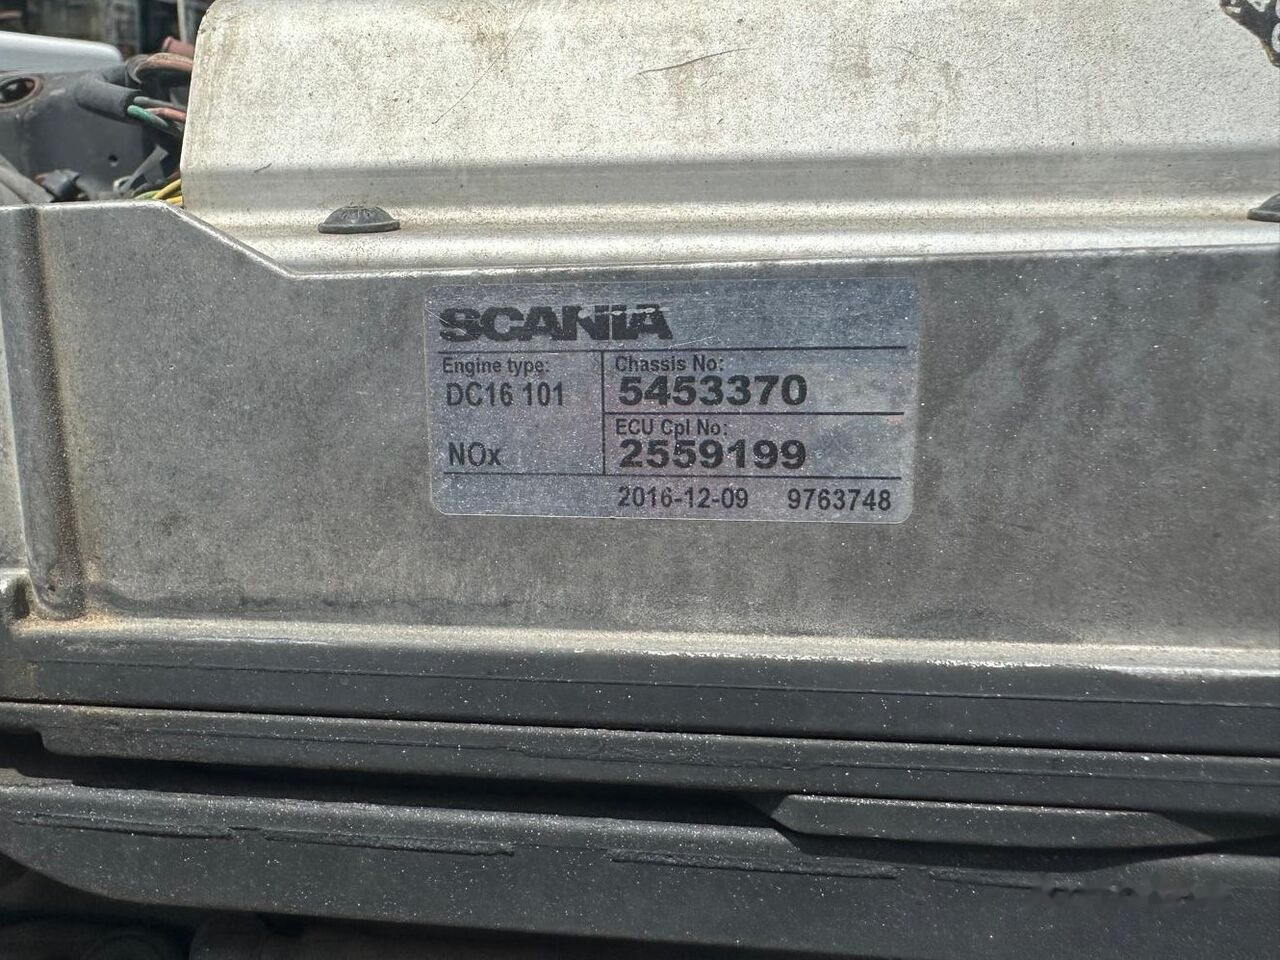 Motor pre Nákladné auto Scania DC16 101 V8 520HP 520KM   Scania: obrázok 3